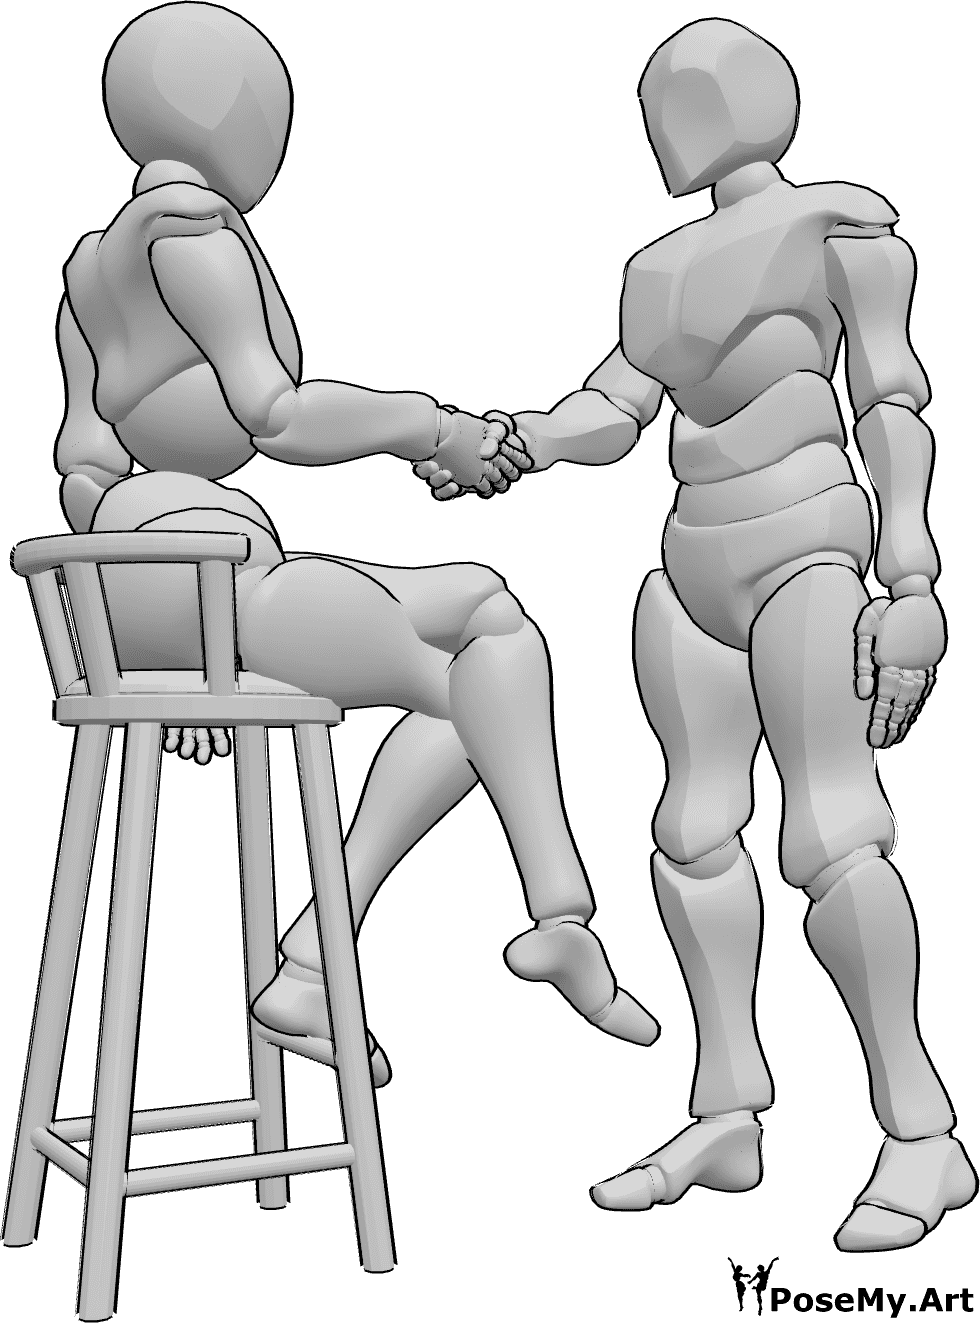 Posen-Referenz- Weibliche sitzende Handshake-Pose - Frau und Mann schütteln sich die Hände, die Frau sitzt auf einem Barhocker